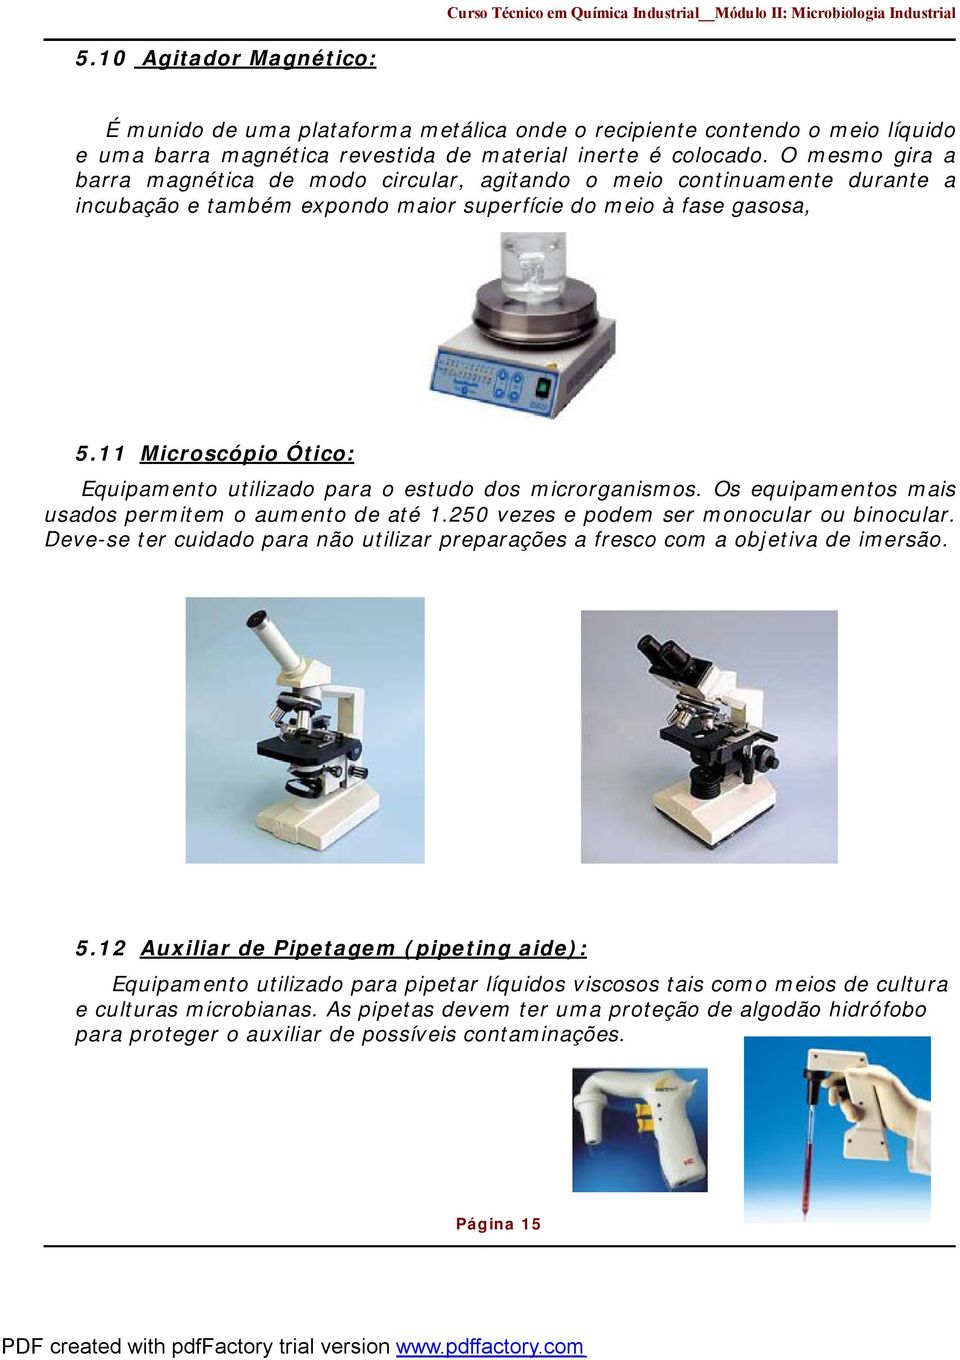 11 Microscópio Ótico: Equipamento utilizado para o estudo dos microrganismos. Os equipamentos mais usados permitem o aumento de até 1.250 vezes e podem ser monocular ou binocular.